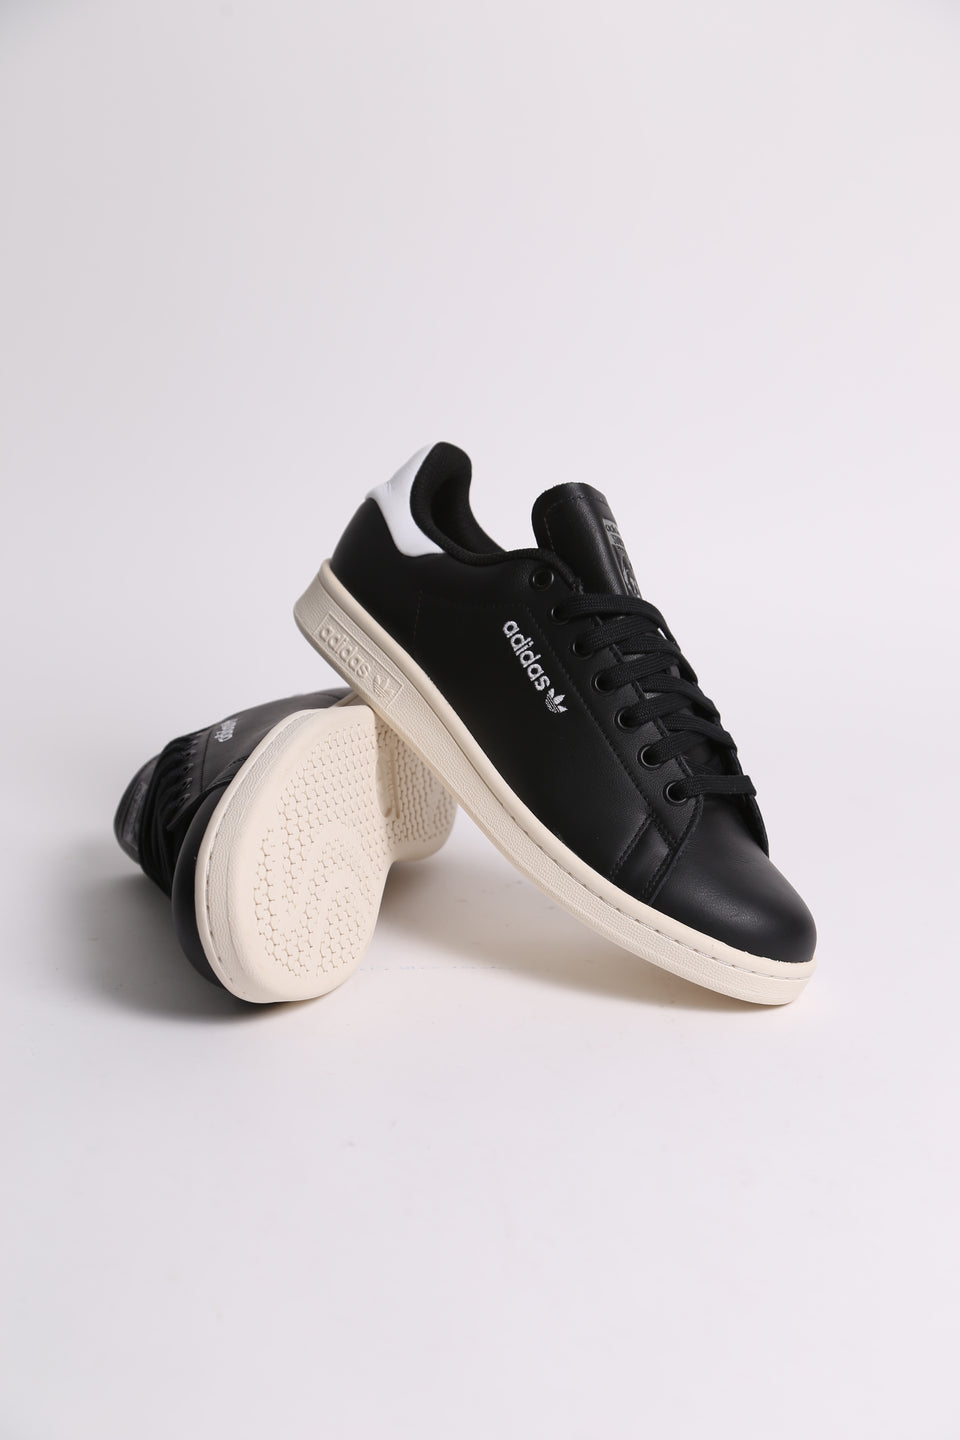 Adidas Stan Smith ADV Leather - Noir